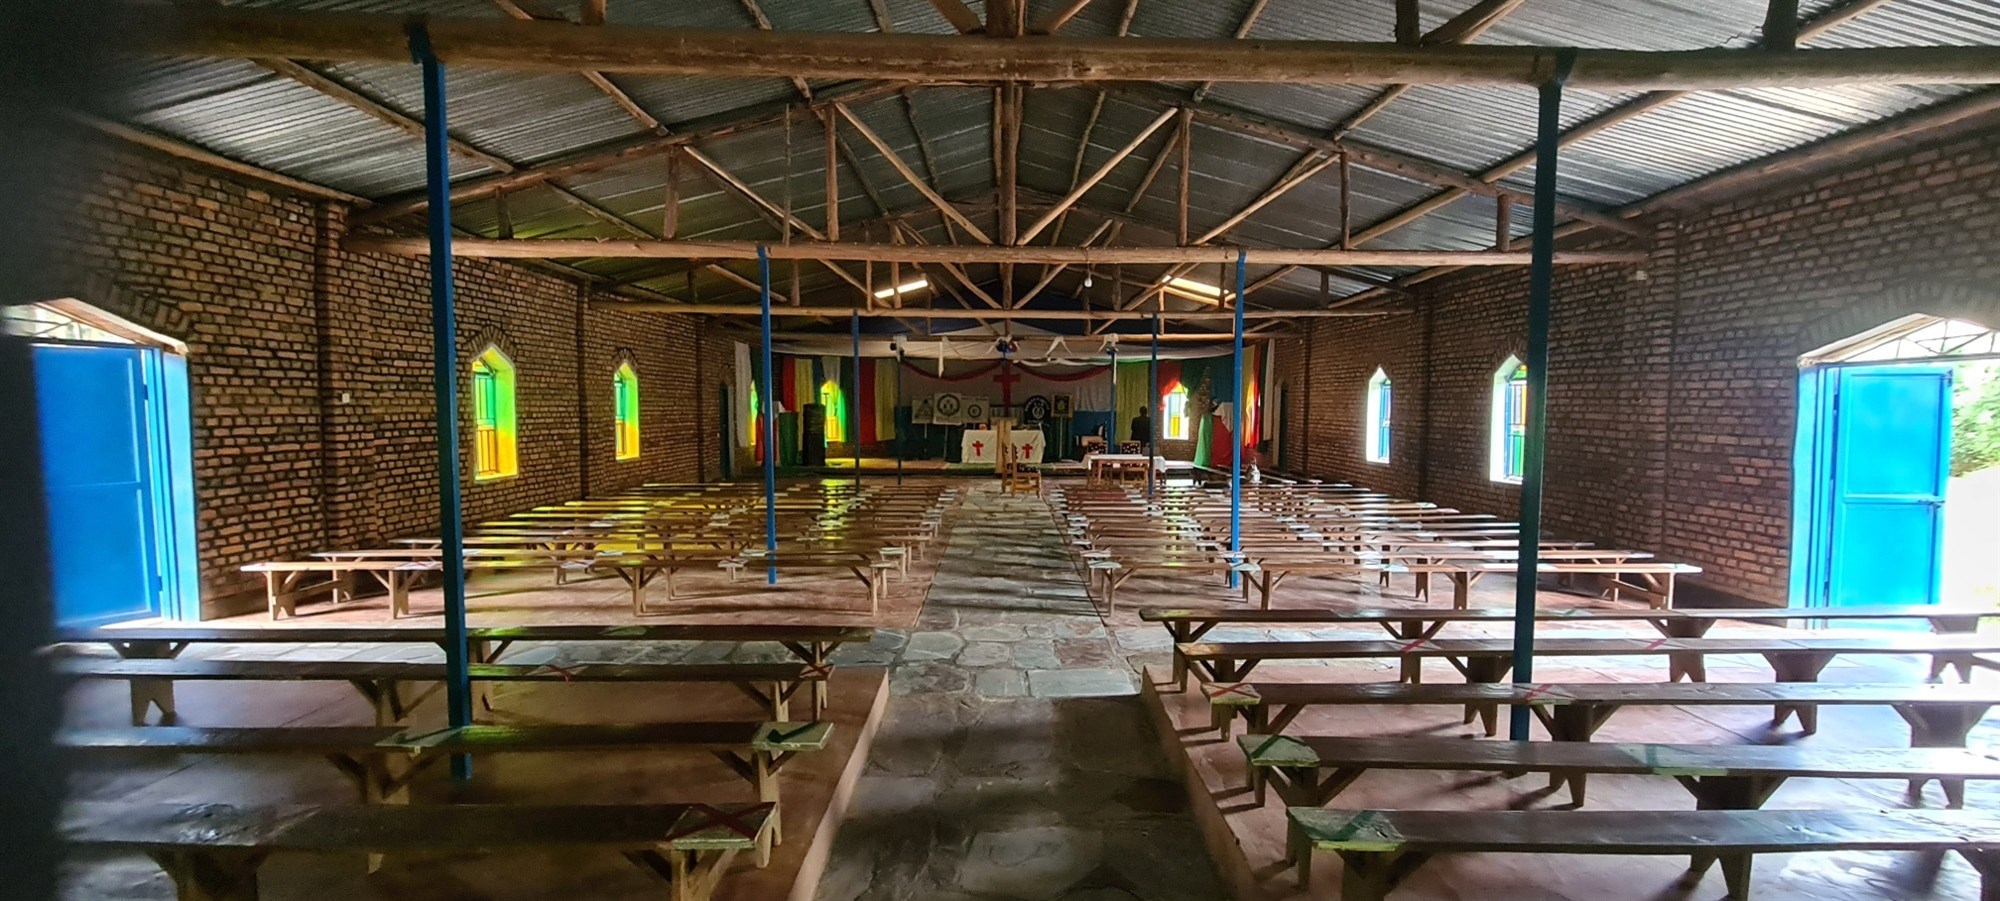 Nyagihanga parish, Byumba diocese